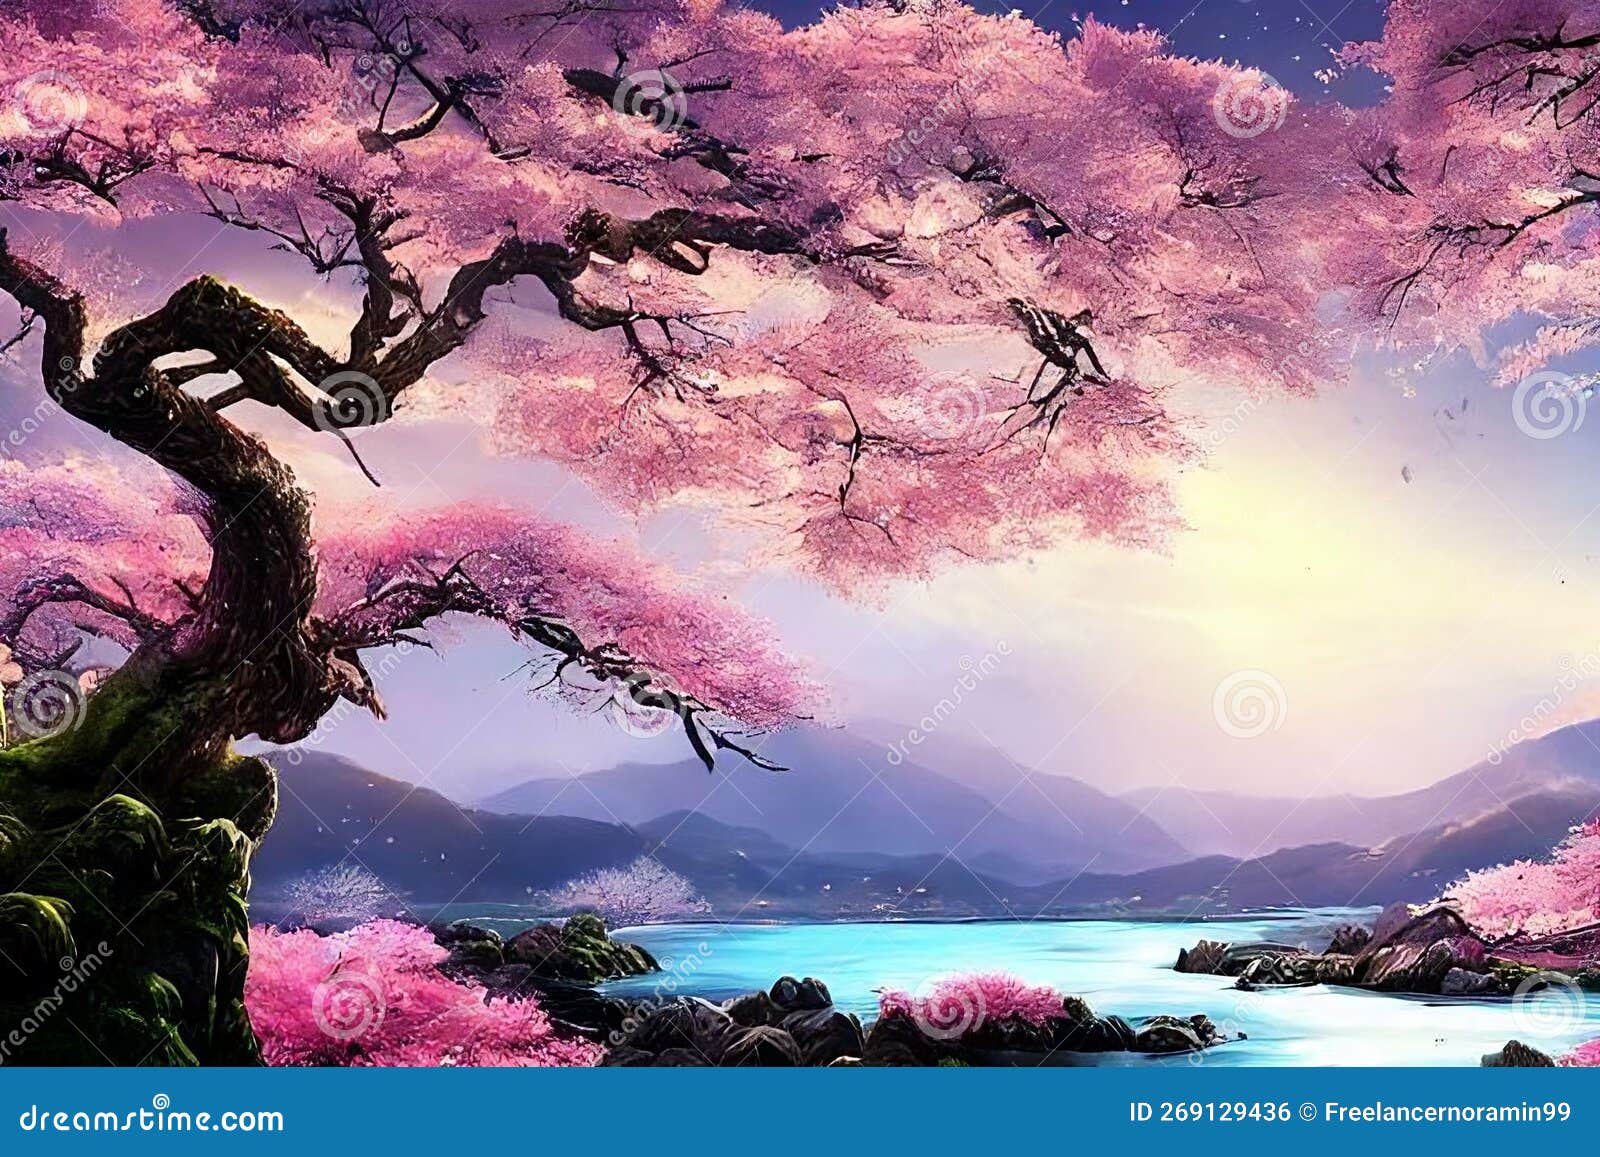 26+] Pink Nature Trees Wallpapers - WallpaperSafari